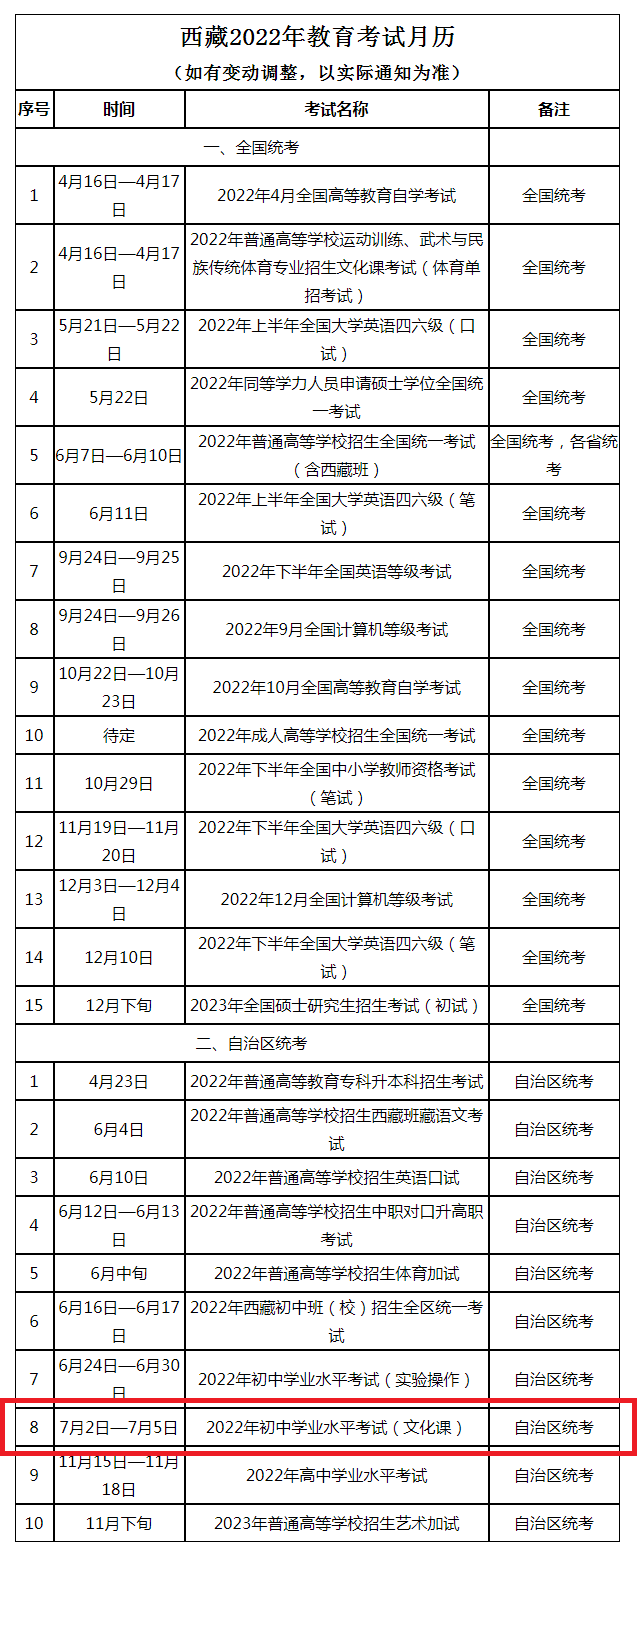 西藏2022年中考文化课考试时间:7月2日-5日